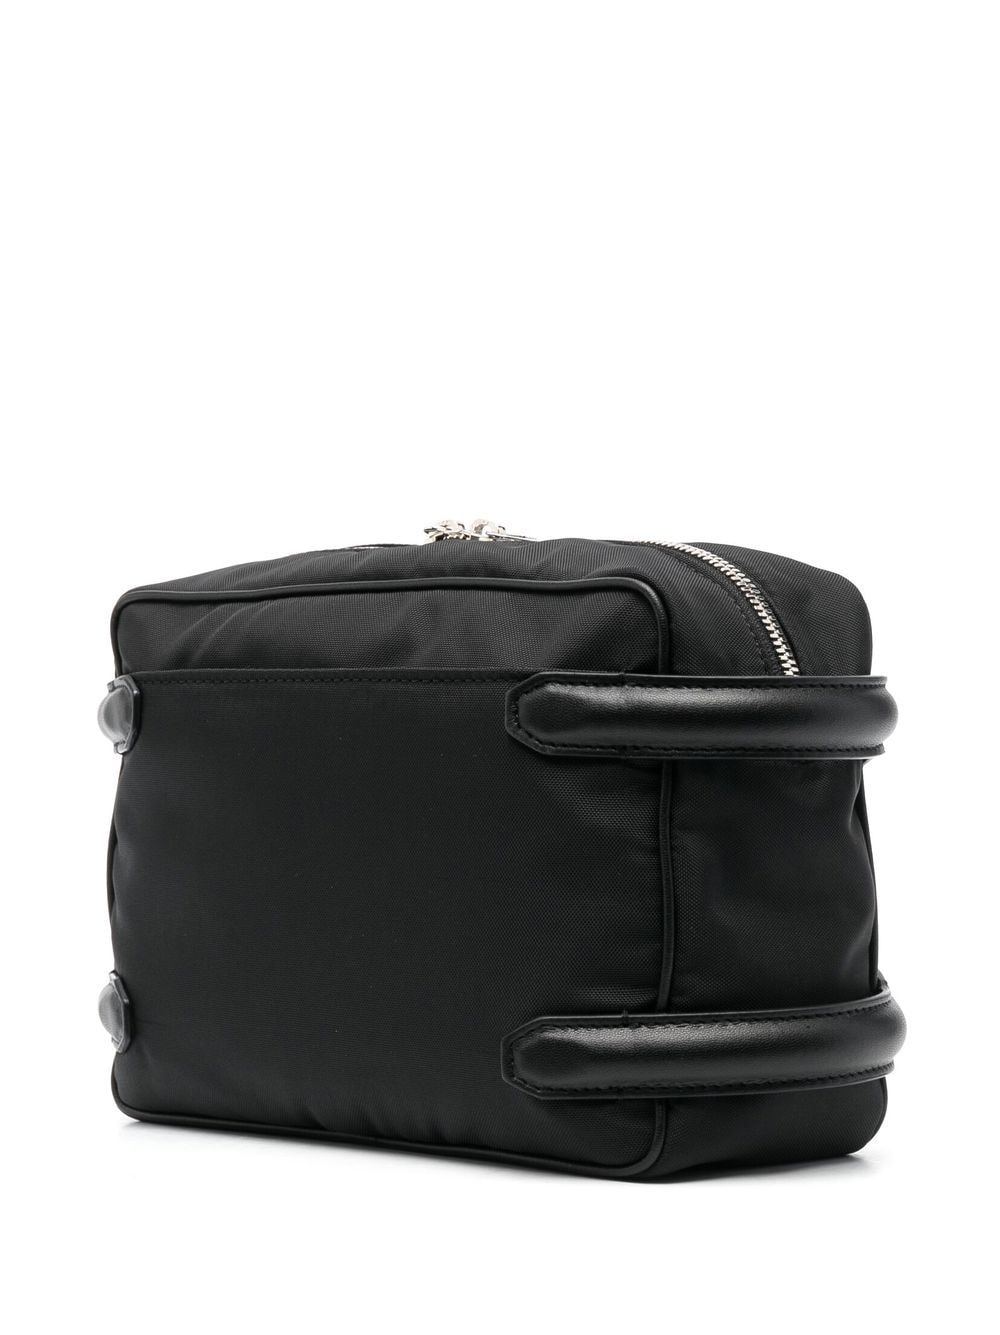 Shop Alexander Mcqueen Men's Black Nylon And Leather Messenger Handbag For Ss23